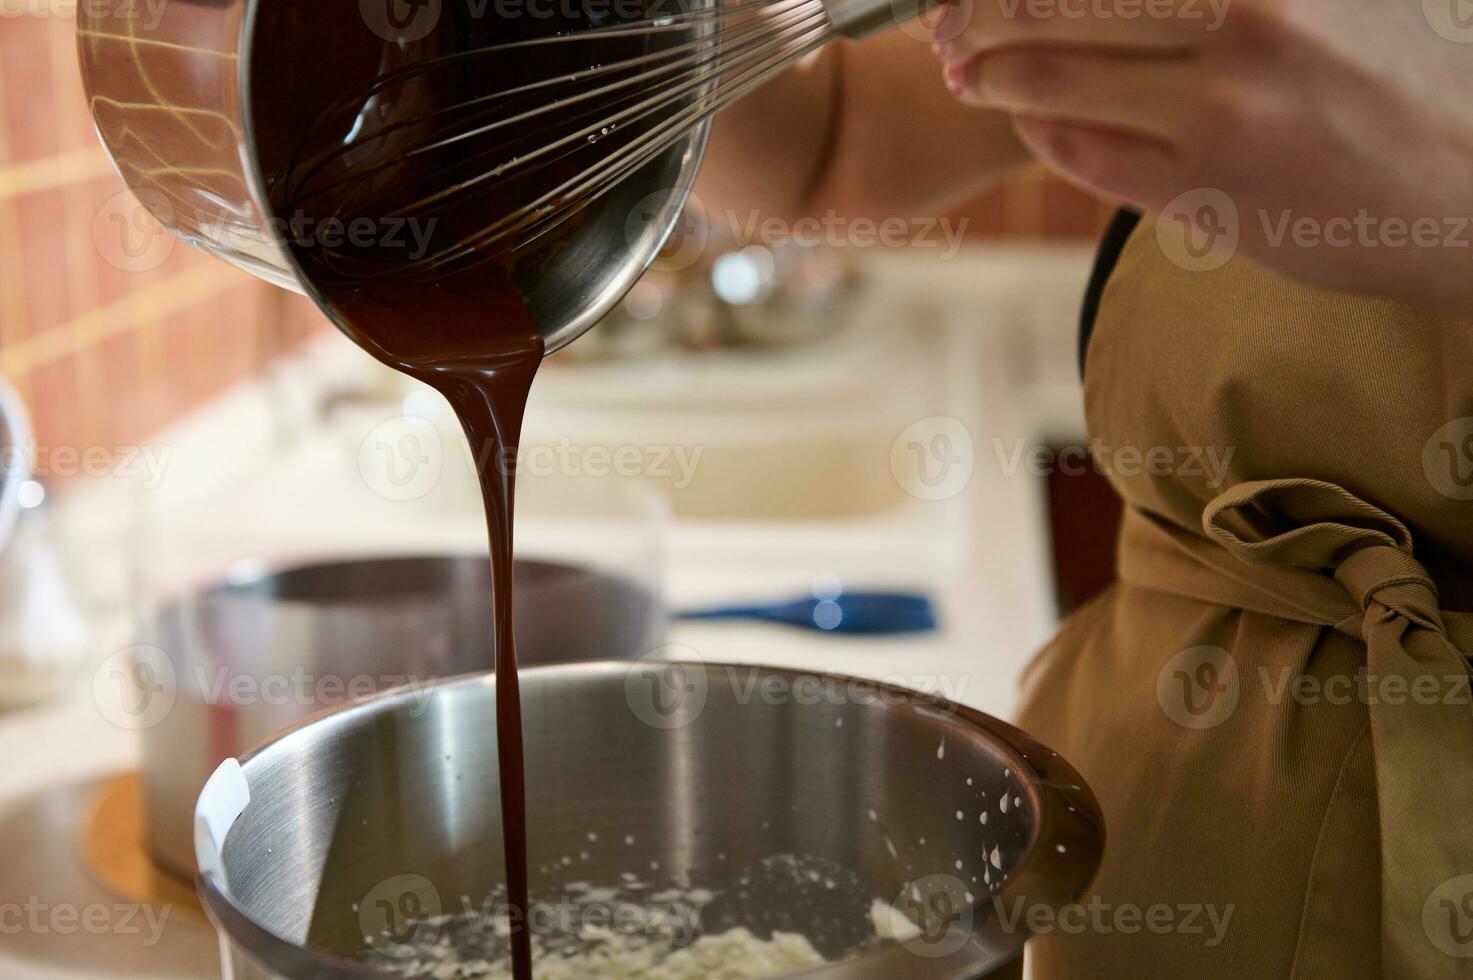 tondu vue Pâtisserie chef en utilisant fouet, ajouter fondu confiserie foncé Chocolat dans une bol de nourriture processeur photo